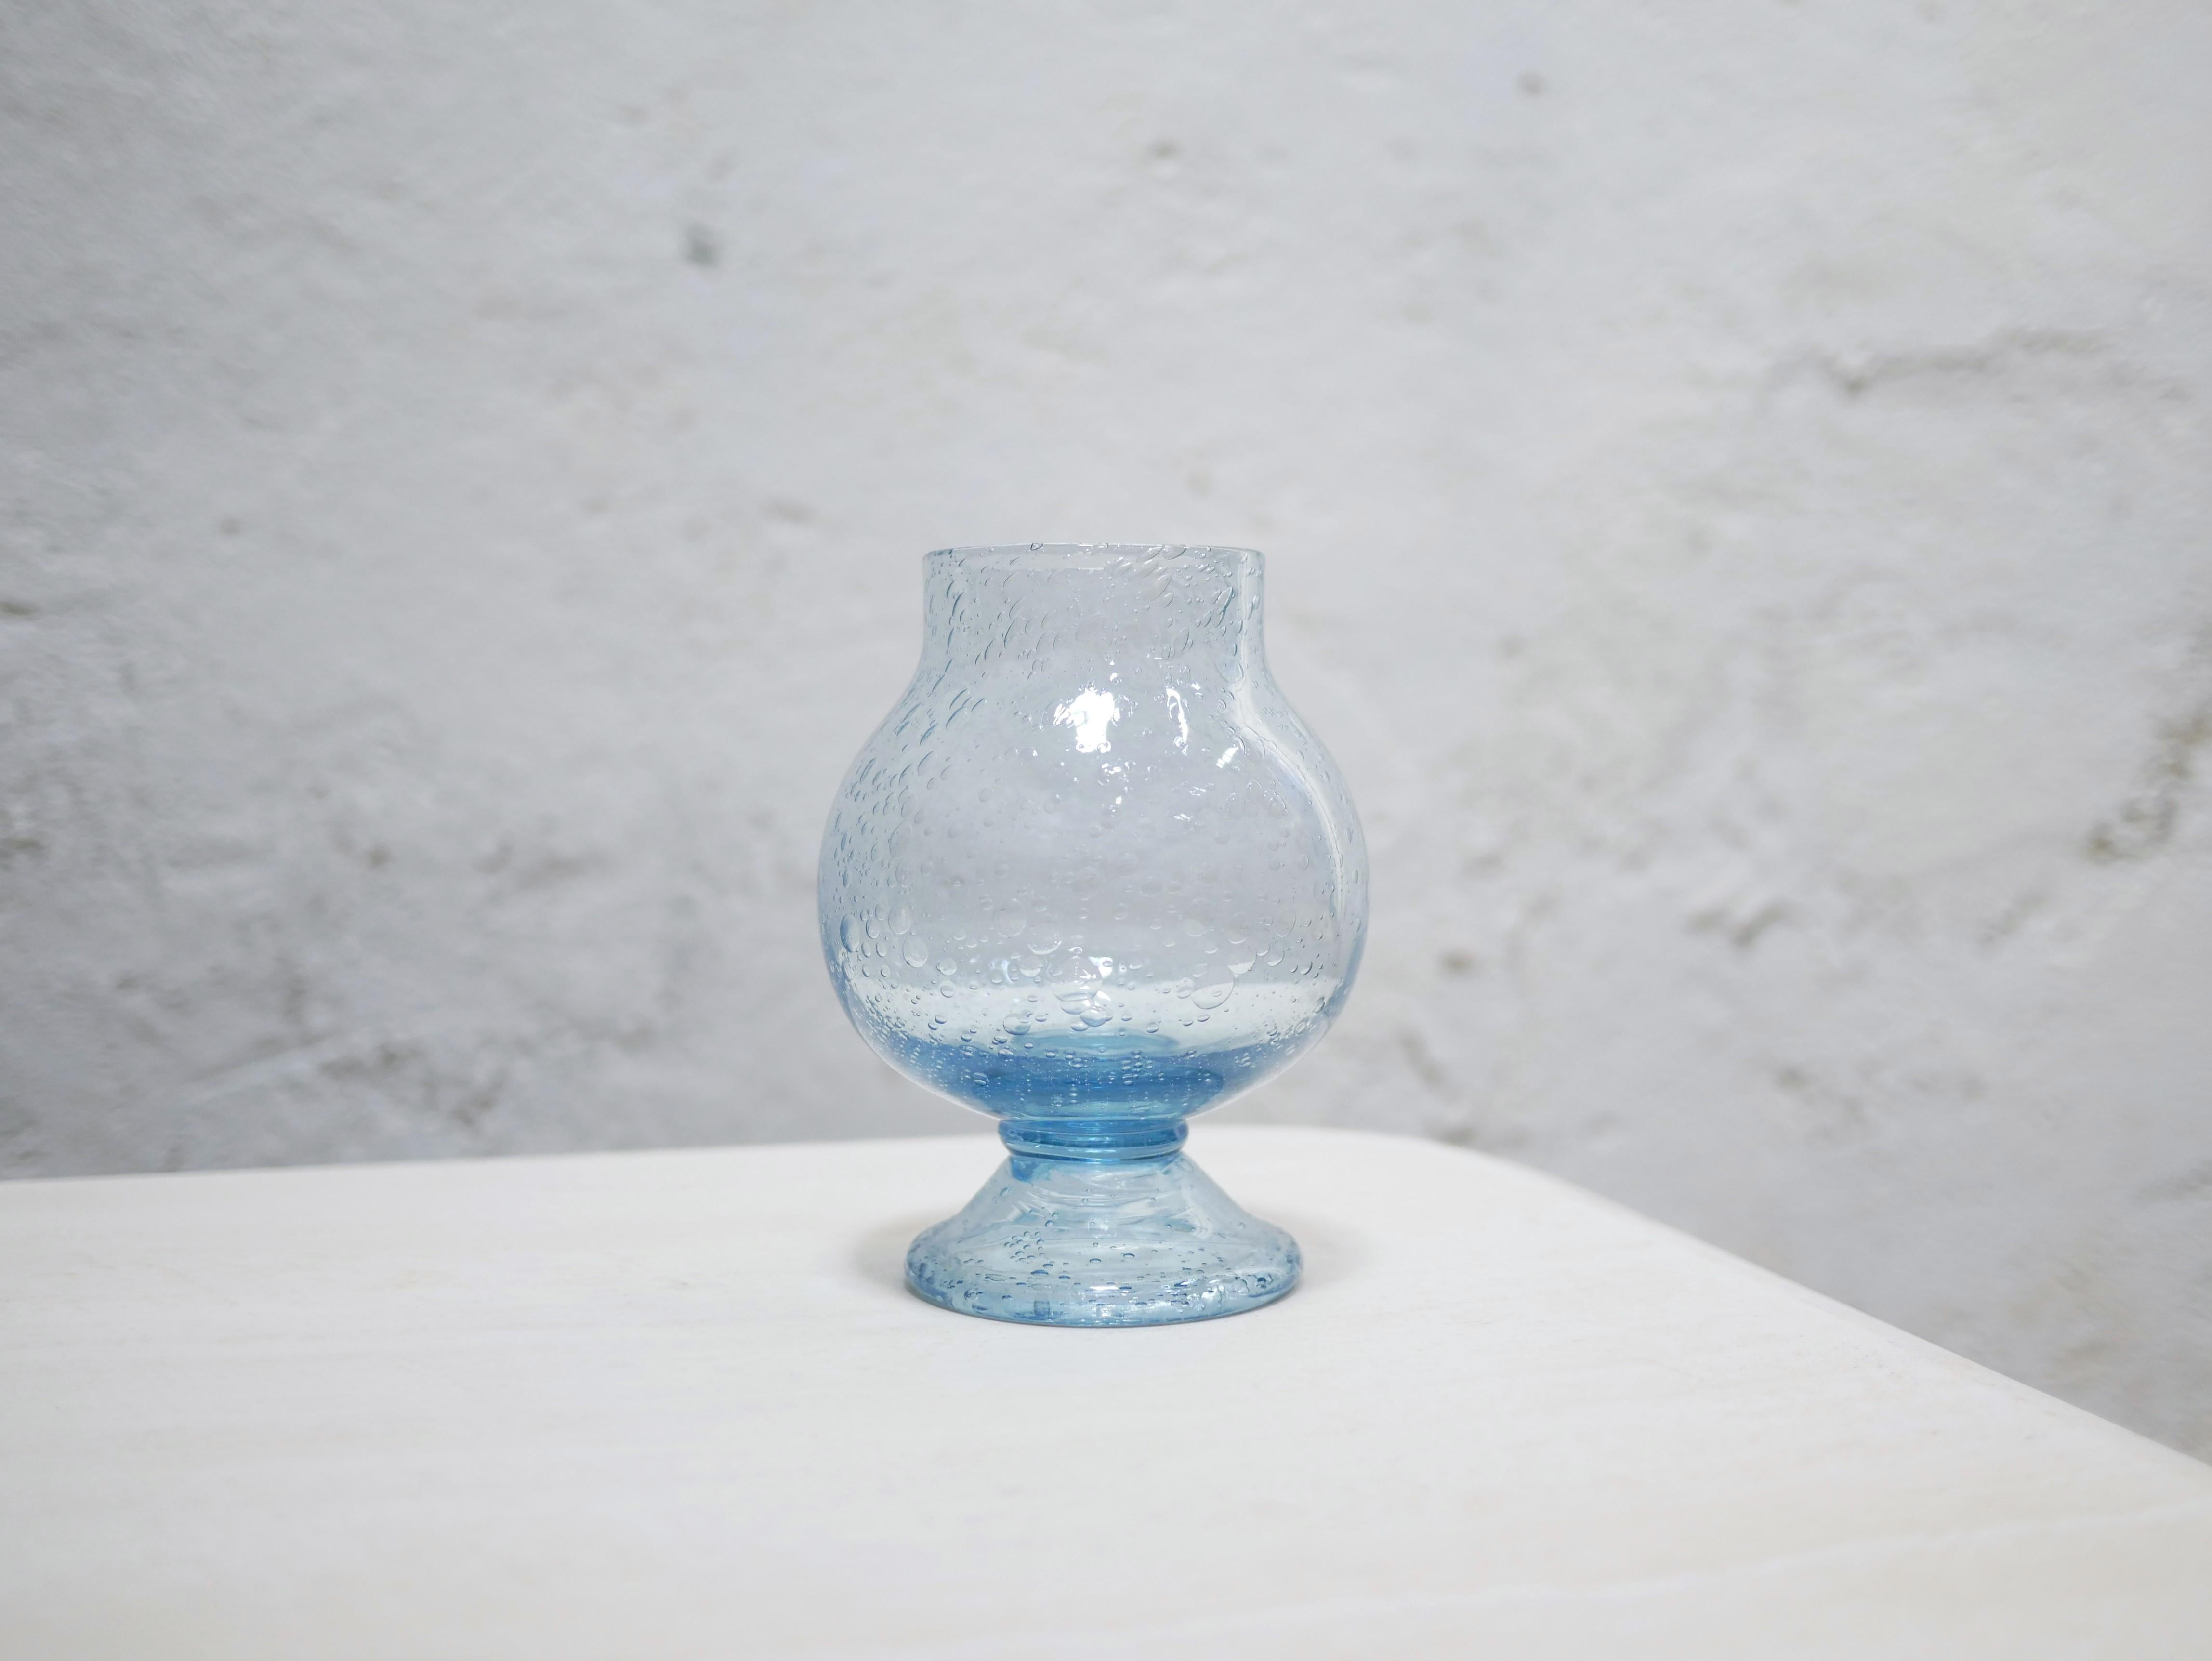 Porte-bougies à réchaud en verre soufflé bleu de la verrerie de Biot datant des années 1960.

Idéal pour la décoration, son verre bullé et sa teinte bleue lumineuse apporteront douceur et chaleur. De belle taille, seul ou associé à d'autres objets,